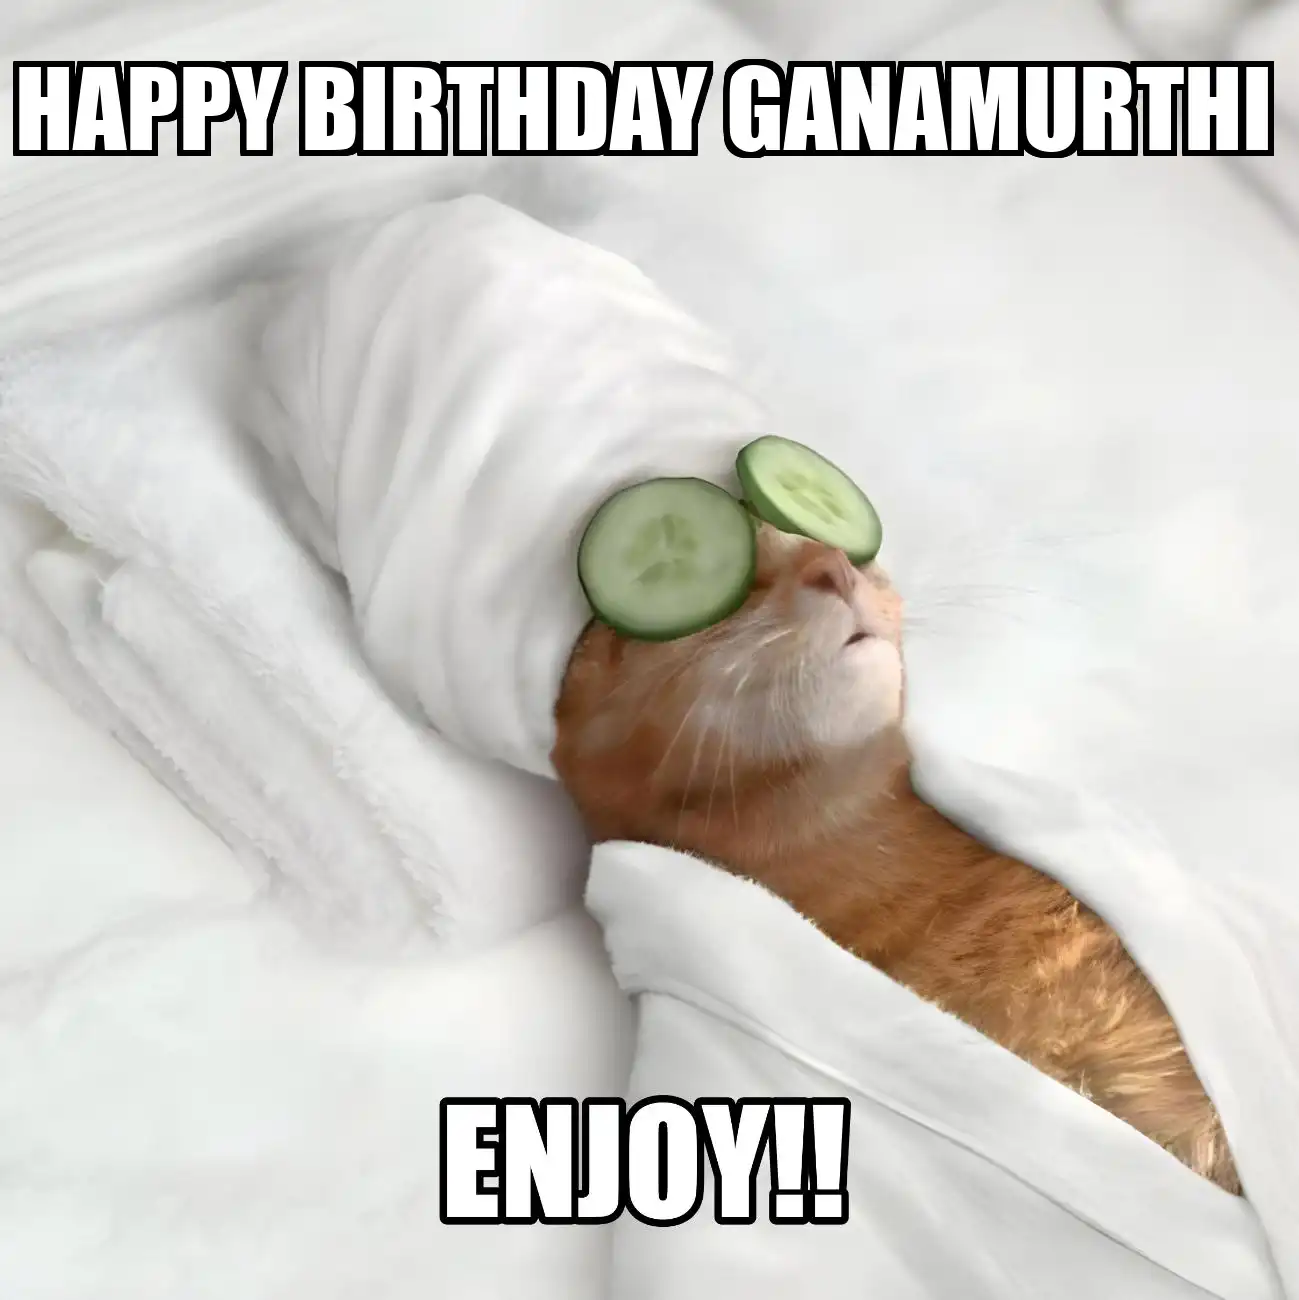 Happy Birthday Ganamurthi Enjoy Cat Meme